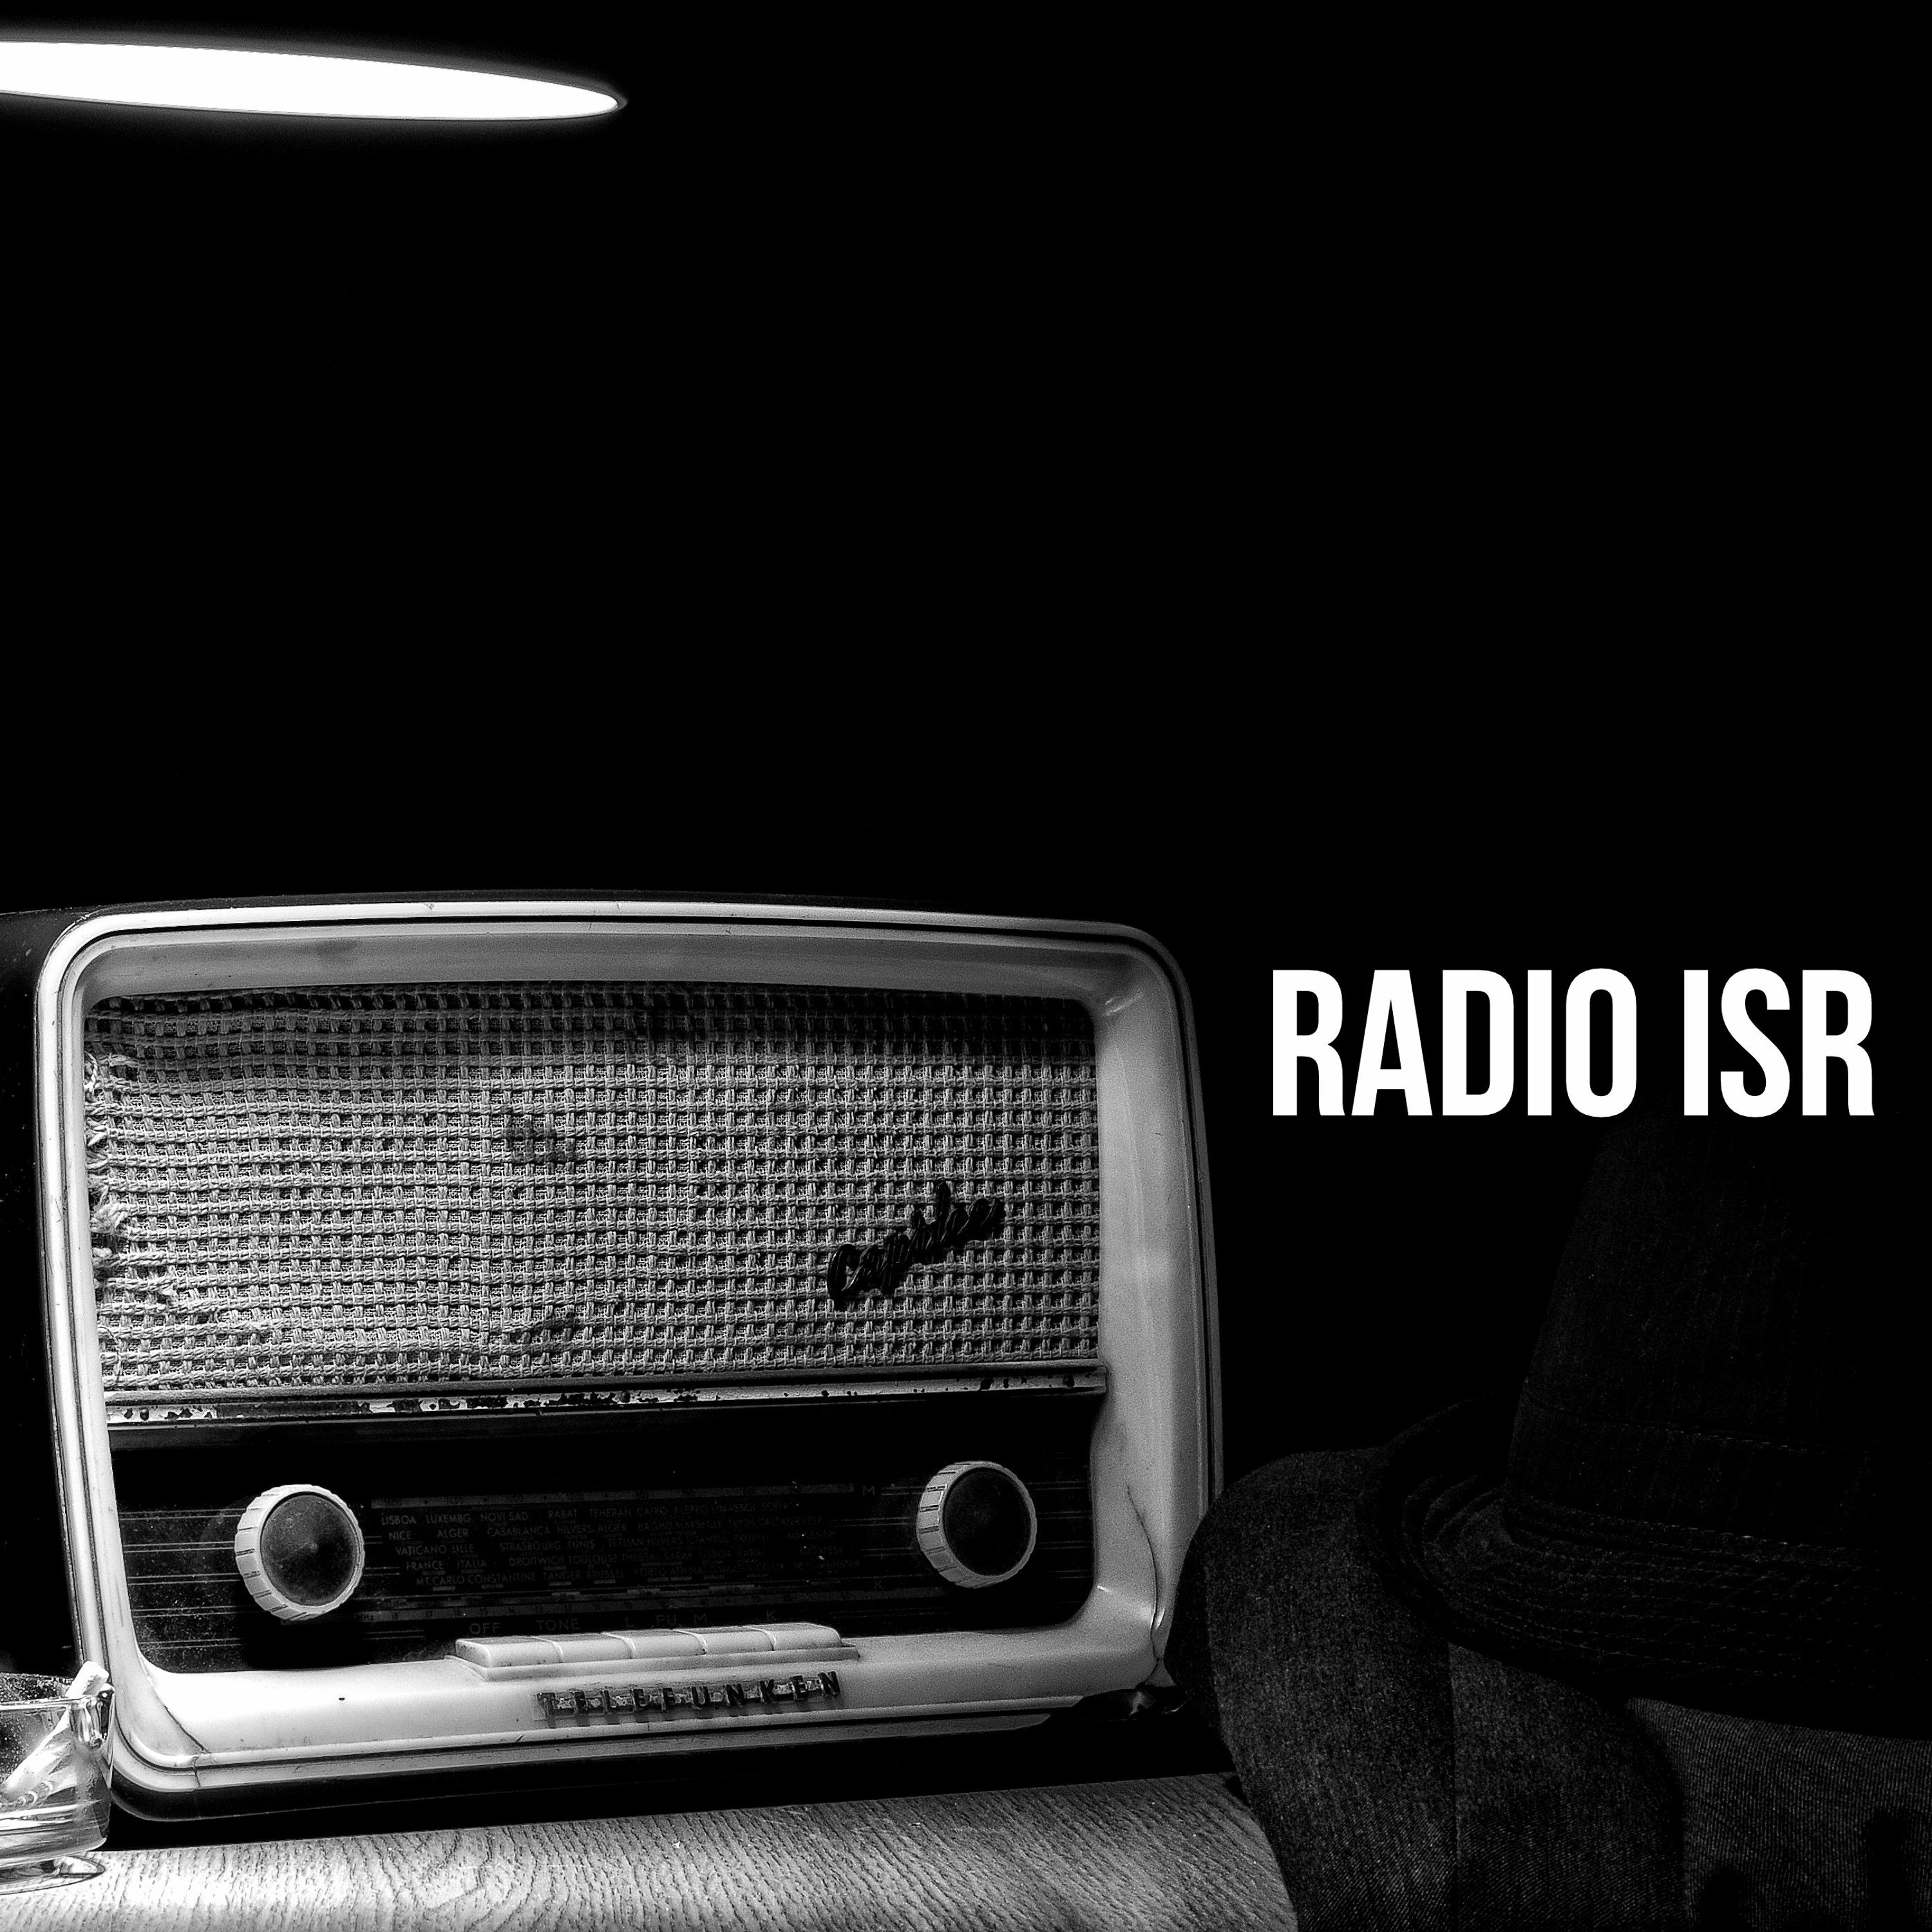 Dota radio edit. Старое радио. Радио арт. Черное радио. Старое радио на темном фоне.